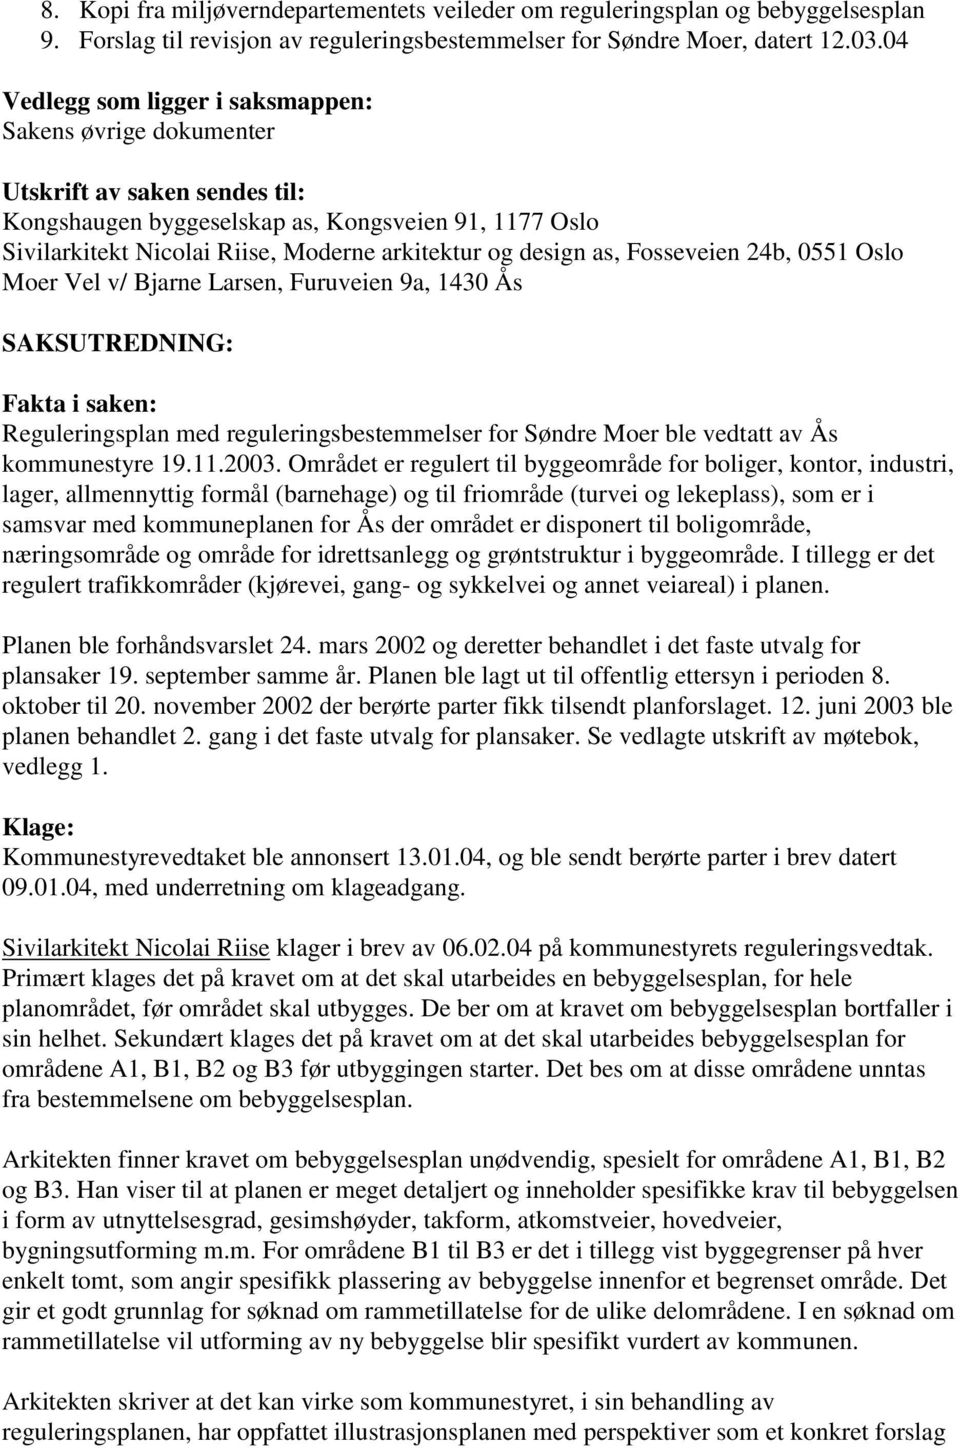 design as, Fosseveien 24b, 0551 Oslo Moer Vel v/ Bjarne Larsen, Furuveien 9a, 1430 Ås SAKSUTREDNING: Fakta i saken: Reguleringsplan med reguleringsbestemmelser for Søndre Moer ble vedtatt av Ås